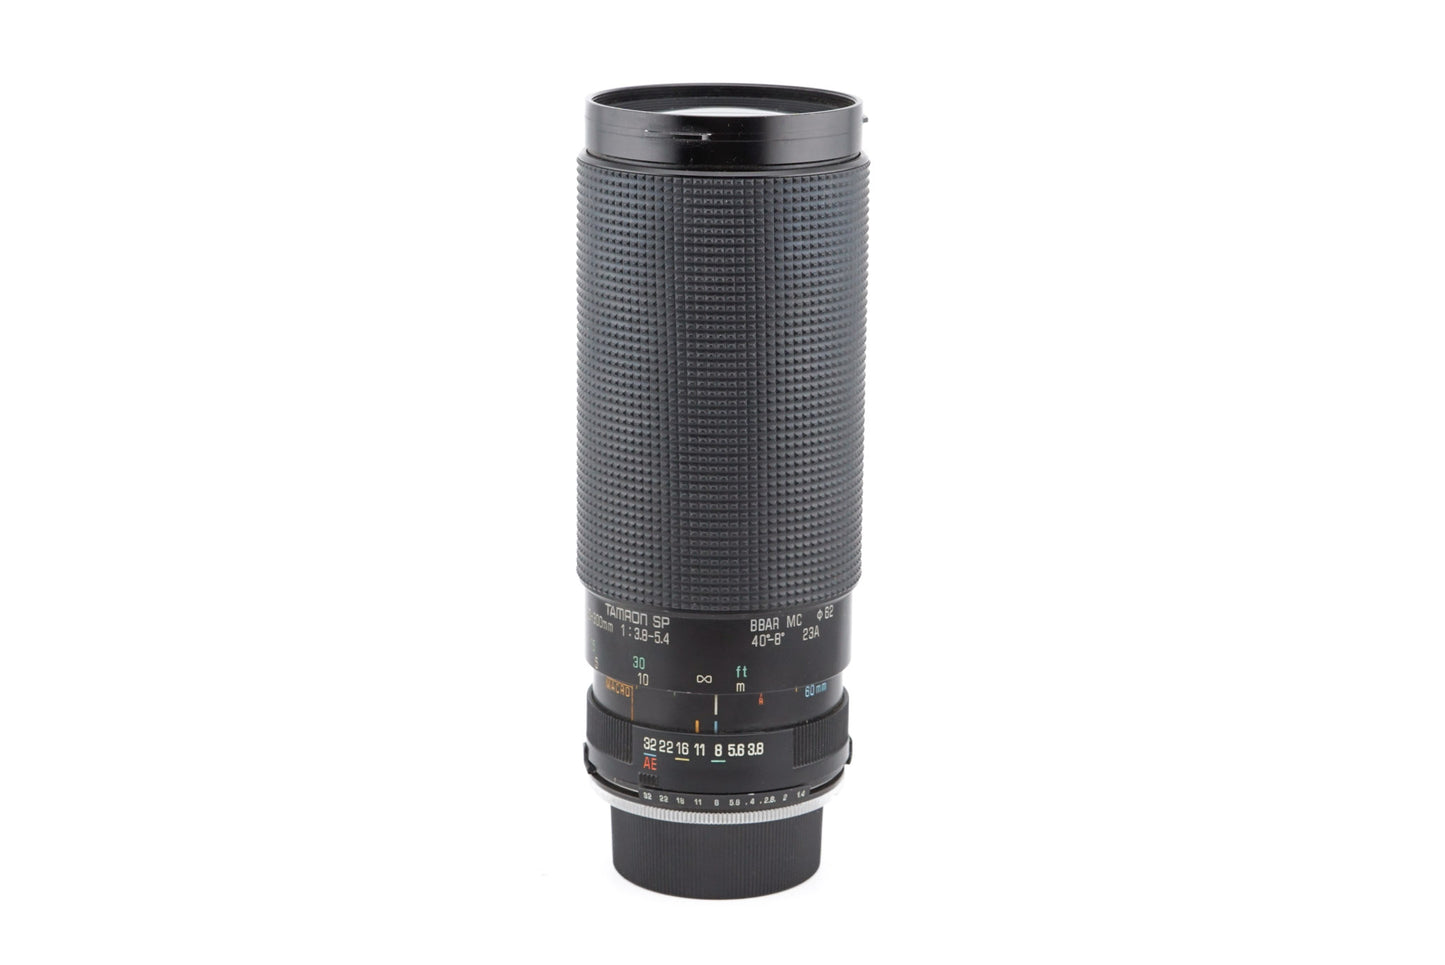 Tamron 60-300mm f3.8-5.4 SP BBAR MC Macro - Lens